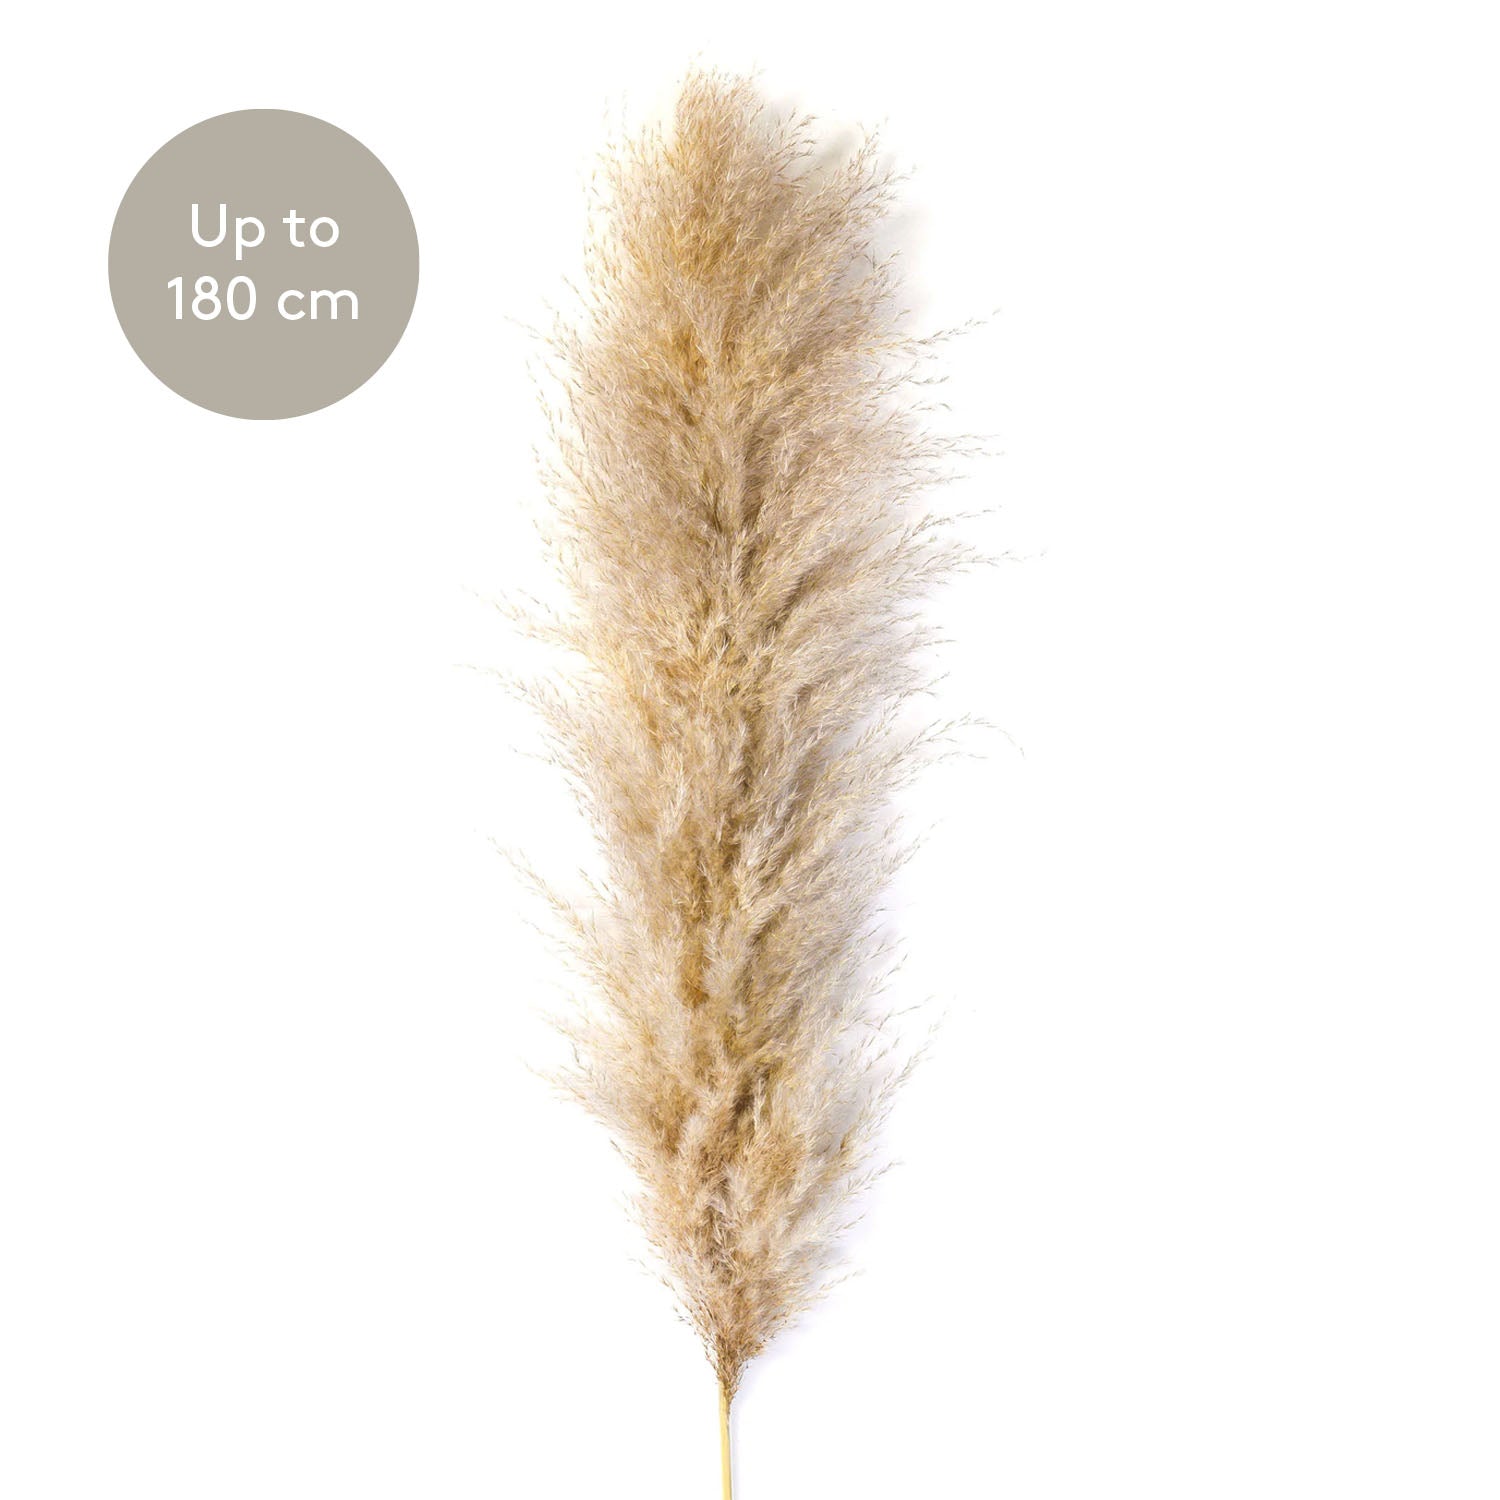 Pampaška trava, velikost od 150-180 cm